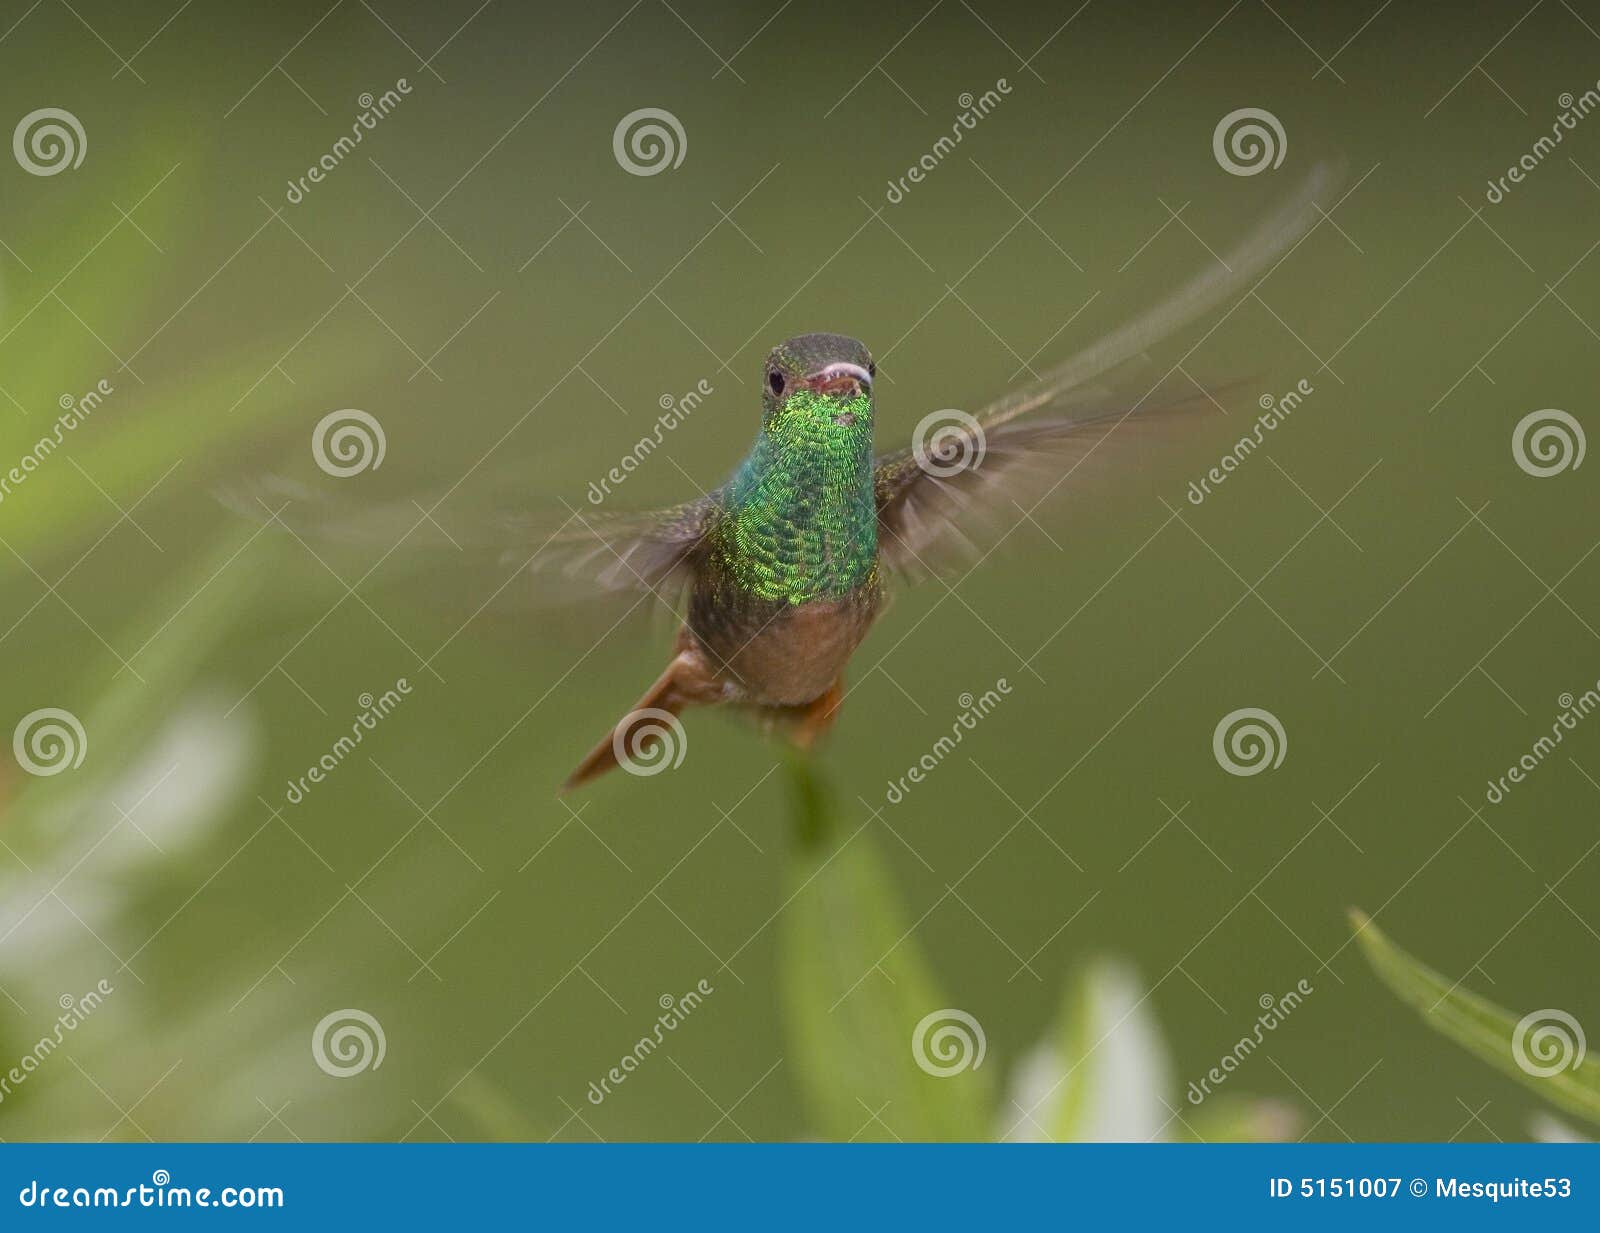 buff-bellied hummingbird flying